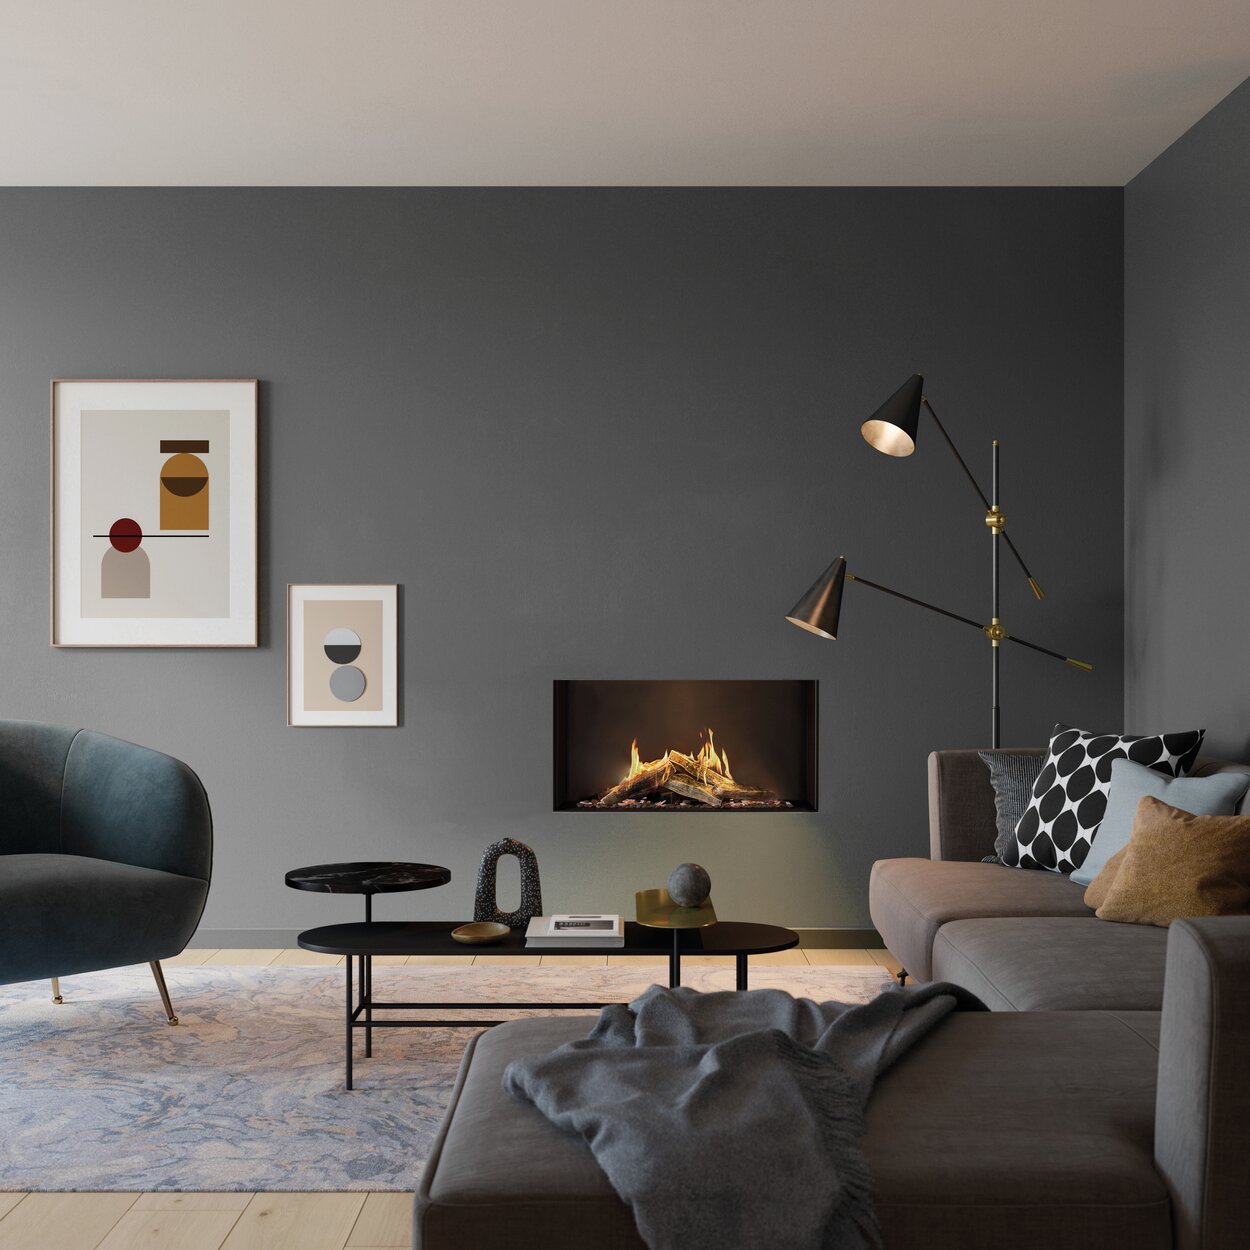 Gas-Kamin VISIO 90 F als Frontkamin in einer salbeigrünen Wand umgeben von passenden Möbel in einem minimalistisch stilvoll eingerichteten Wohnzimmer